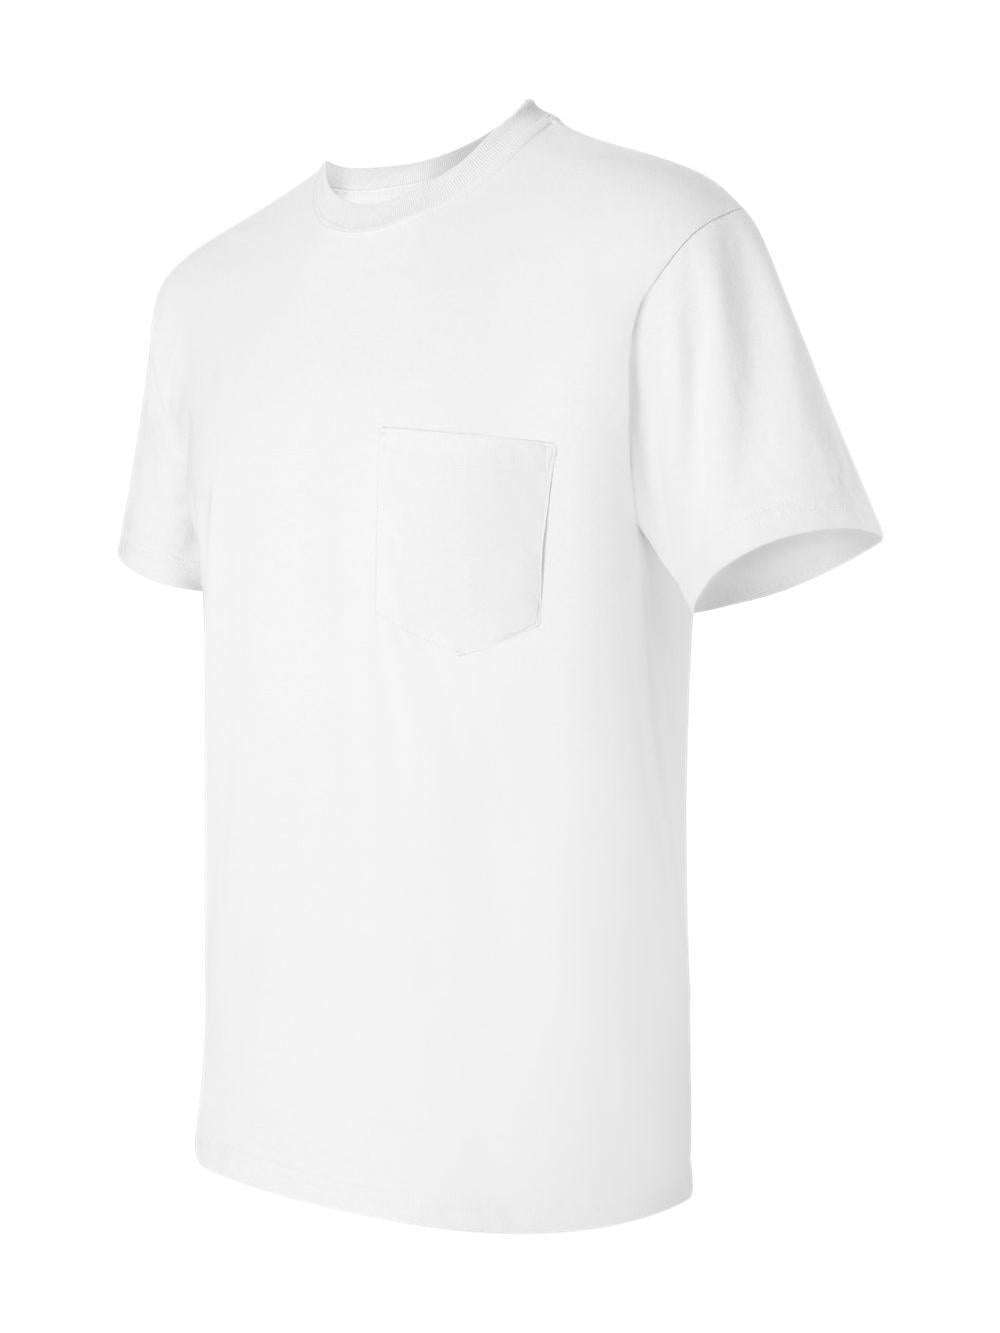 Gildan - Ultra Cotton Pocket T-Shirt - 2300 - White - Size: 4XL 